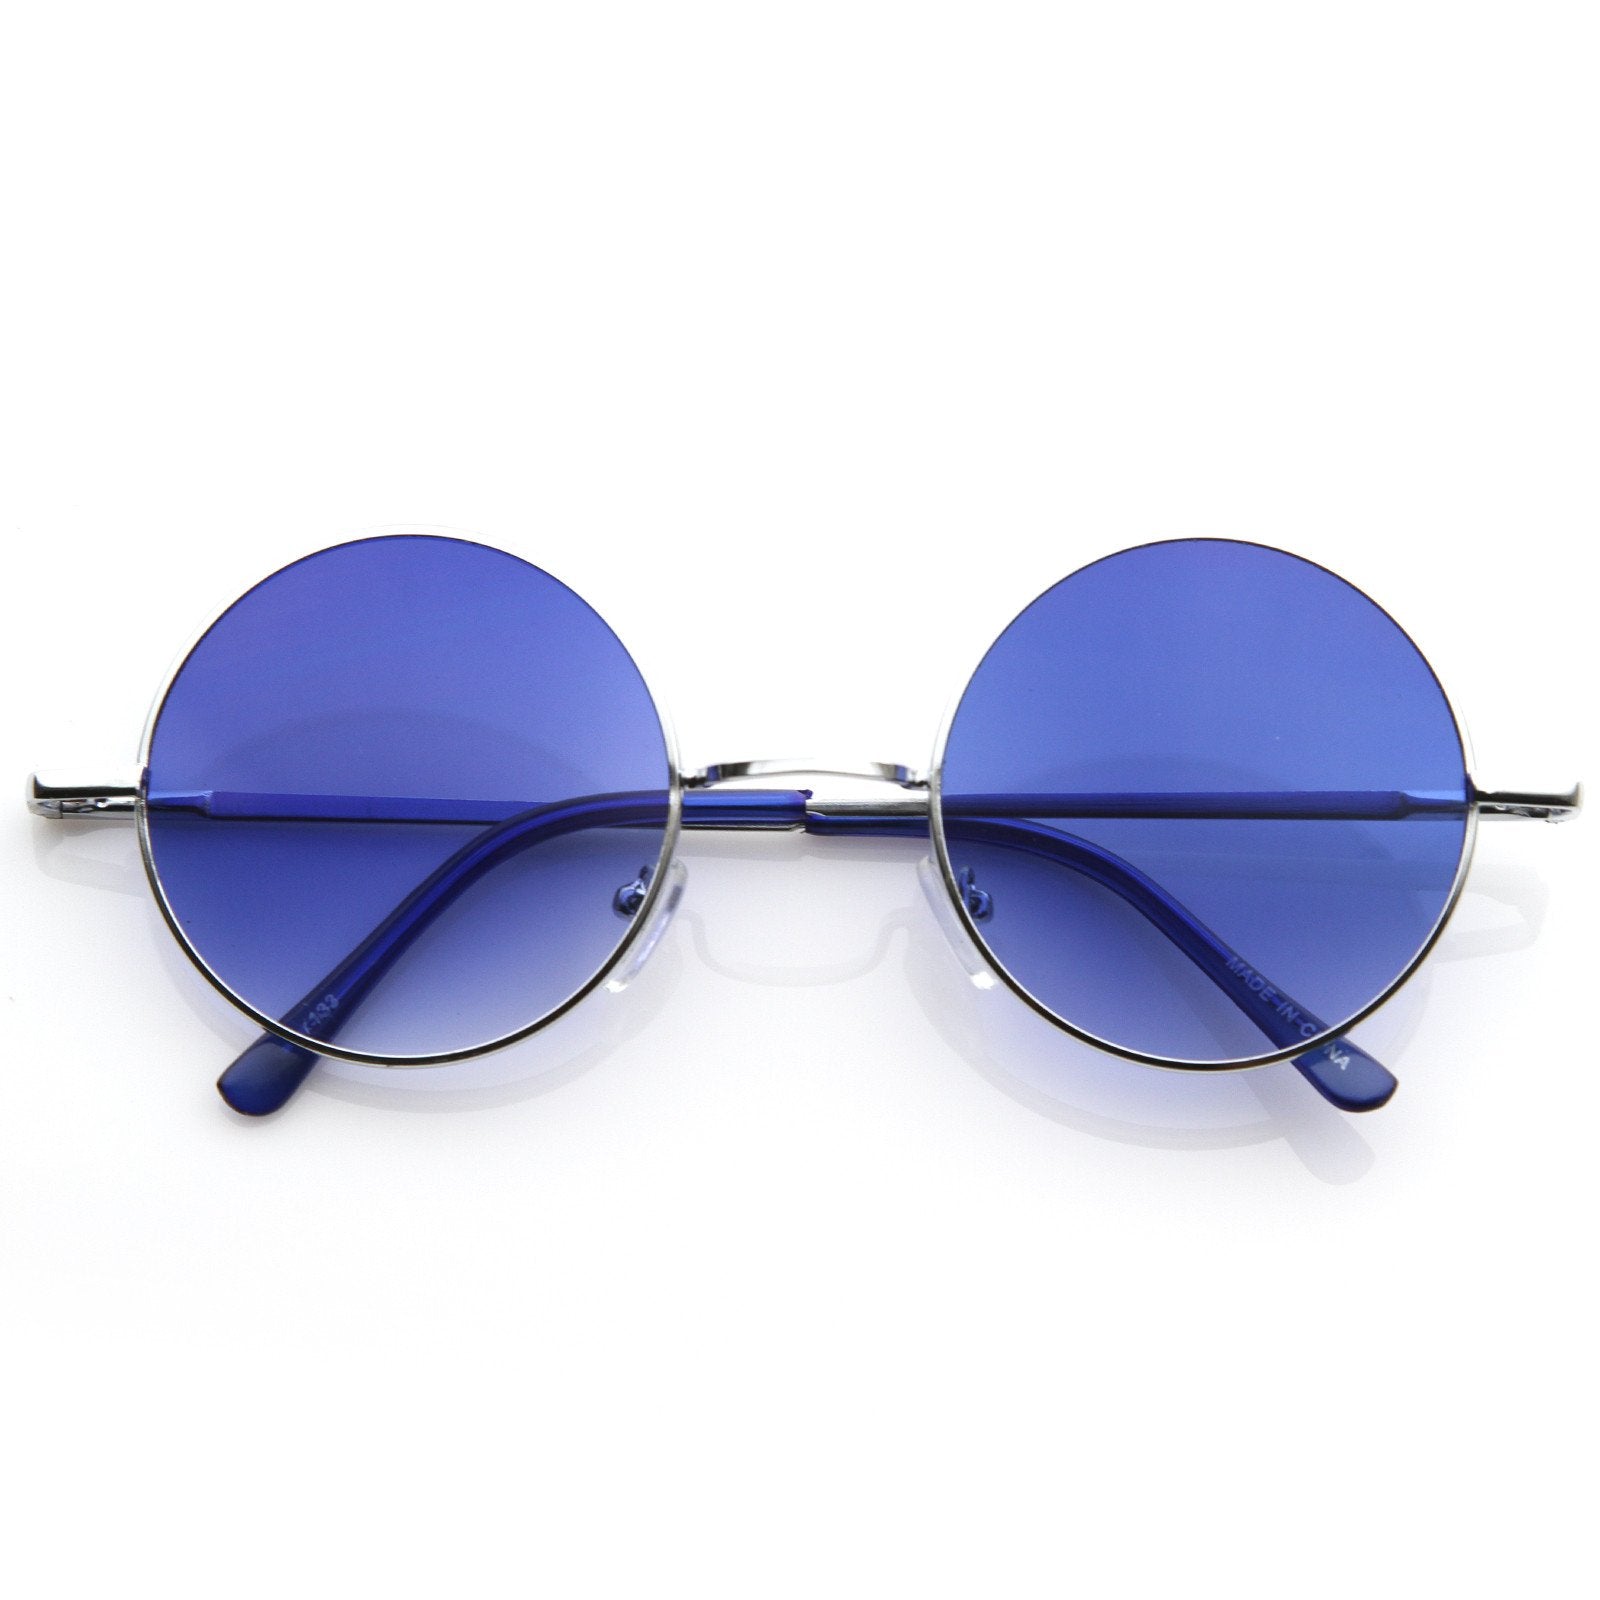 zeroUV - Micro Retro Vintage-Inspired 90s Square Sunglasses D304